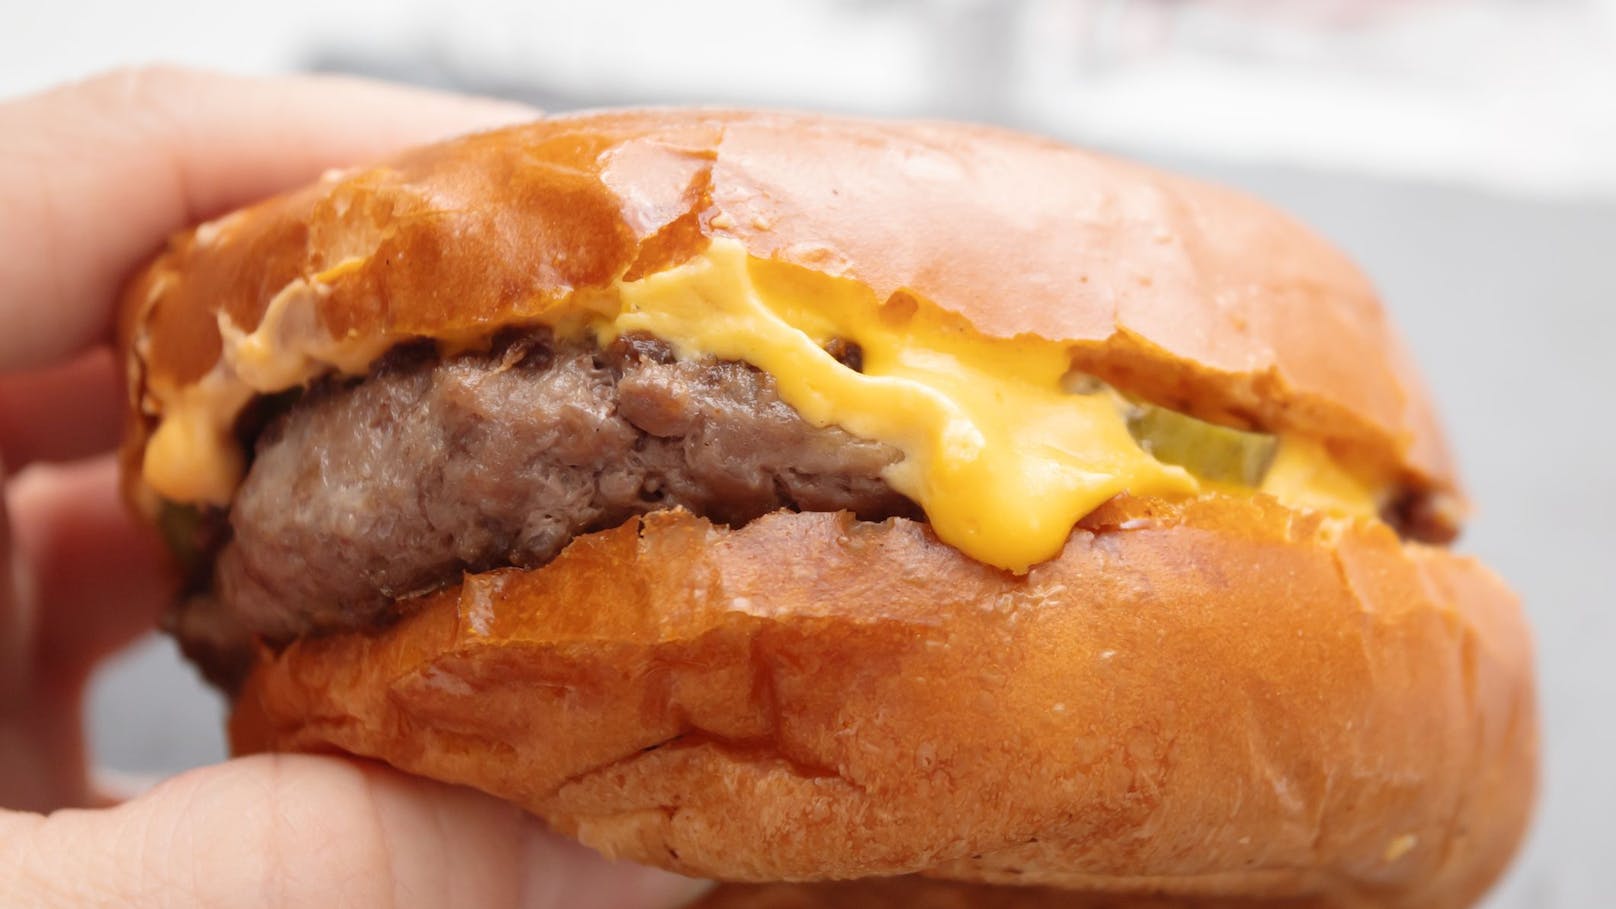 Übler Burger-Test – so kamen Darmbakterien ins Essen